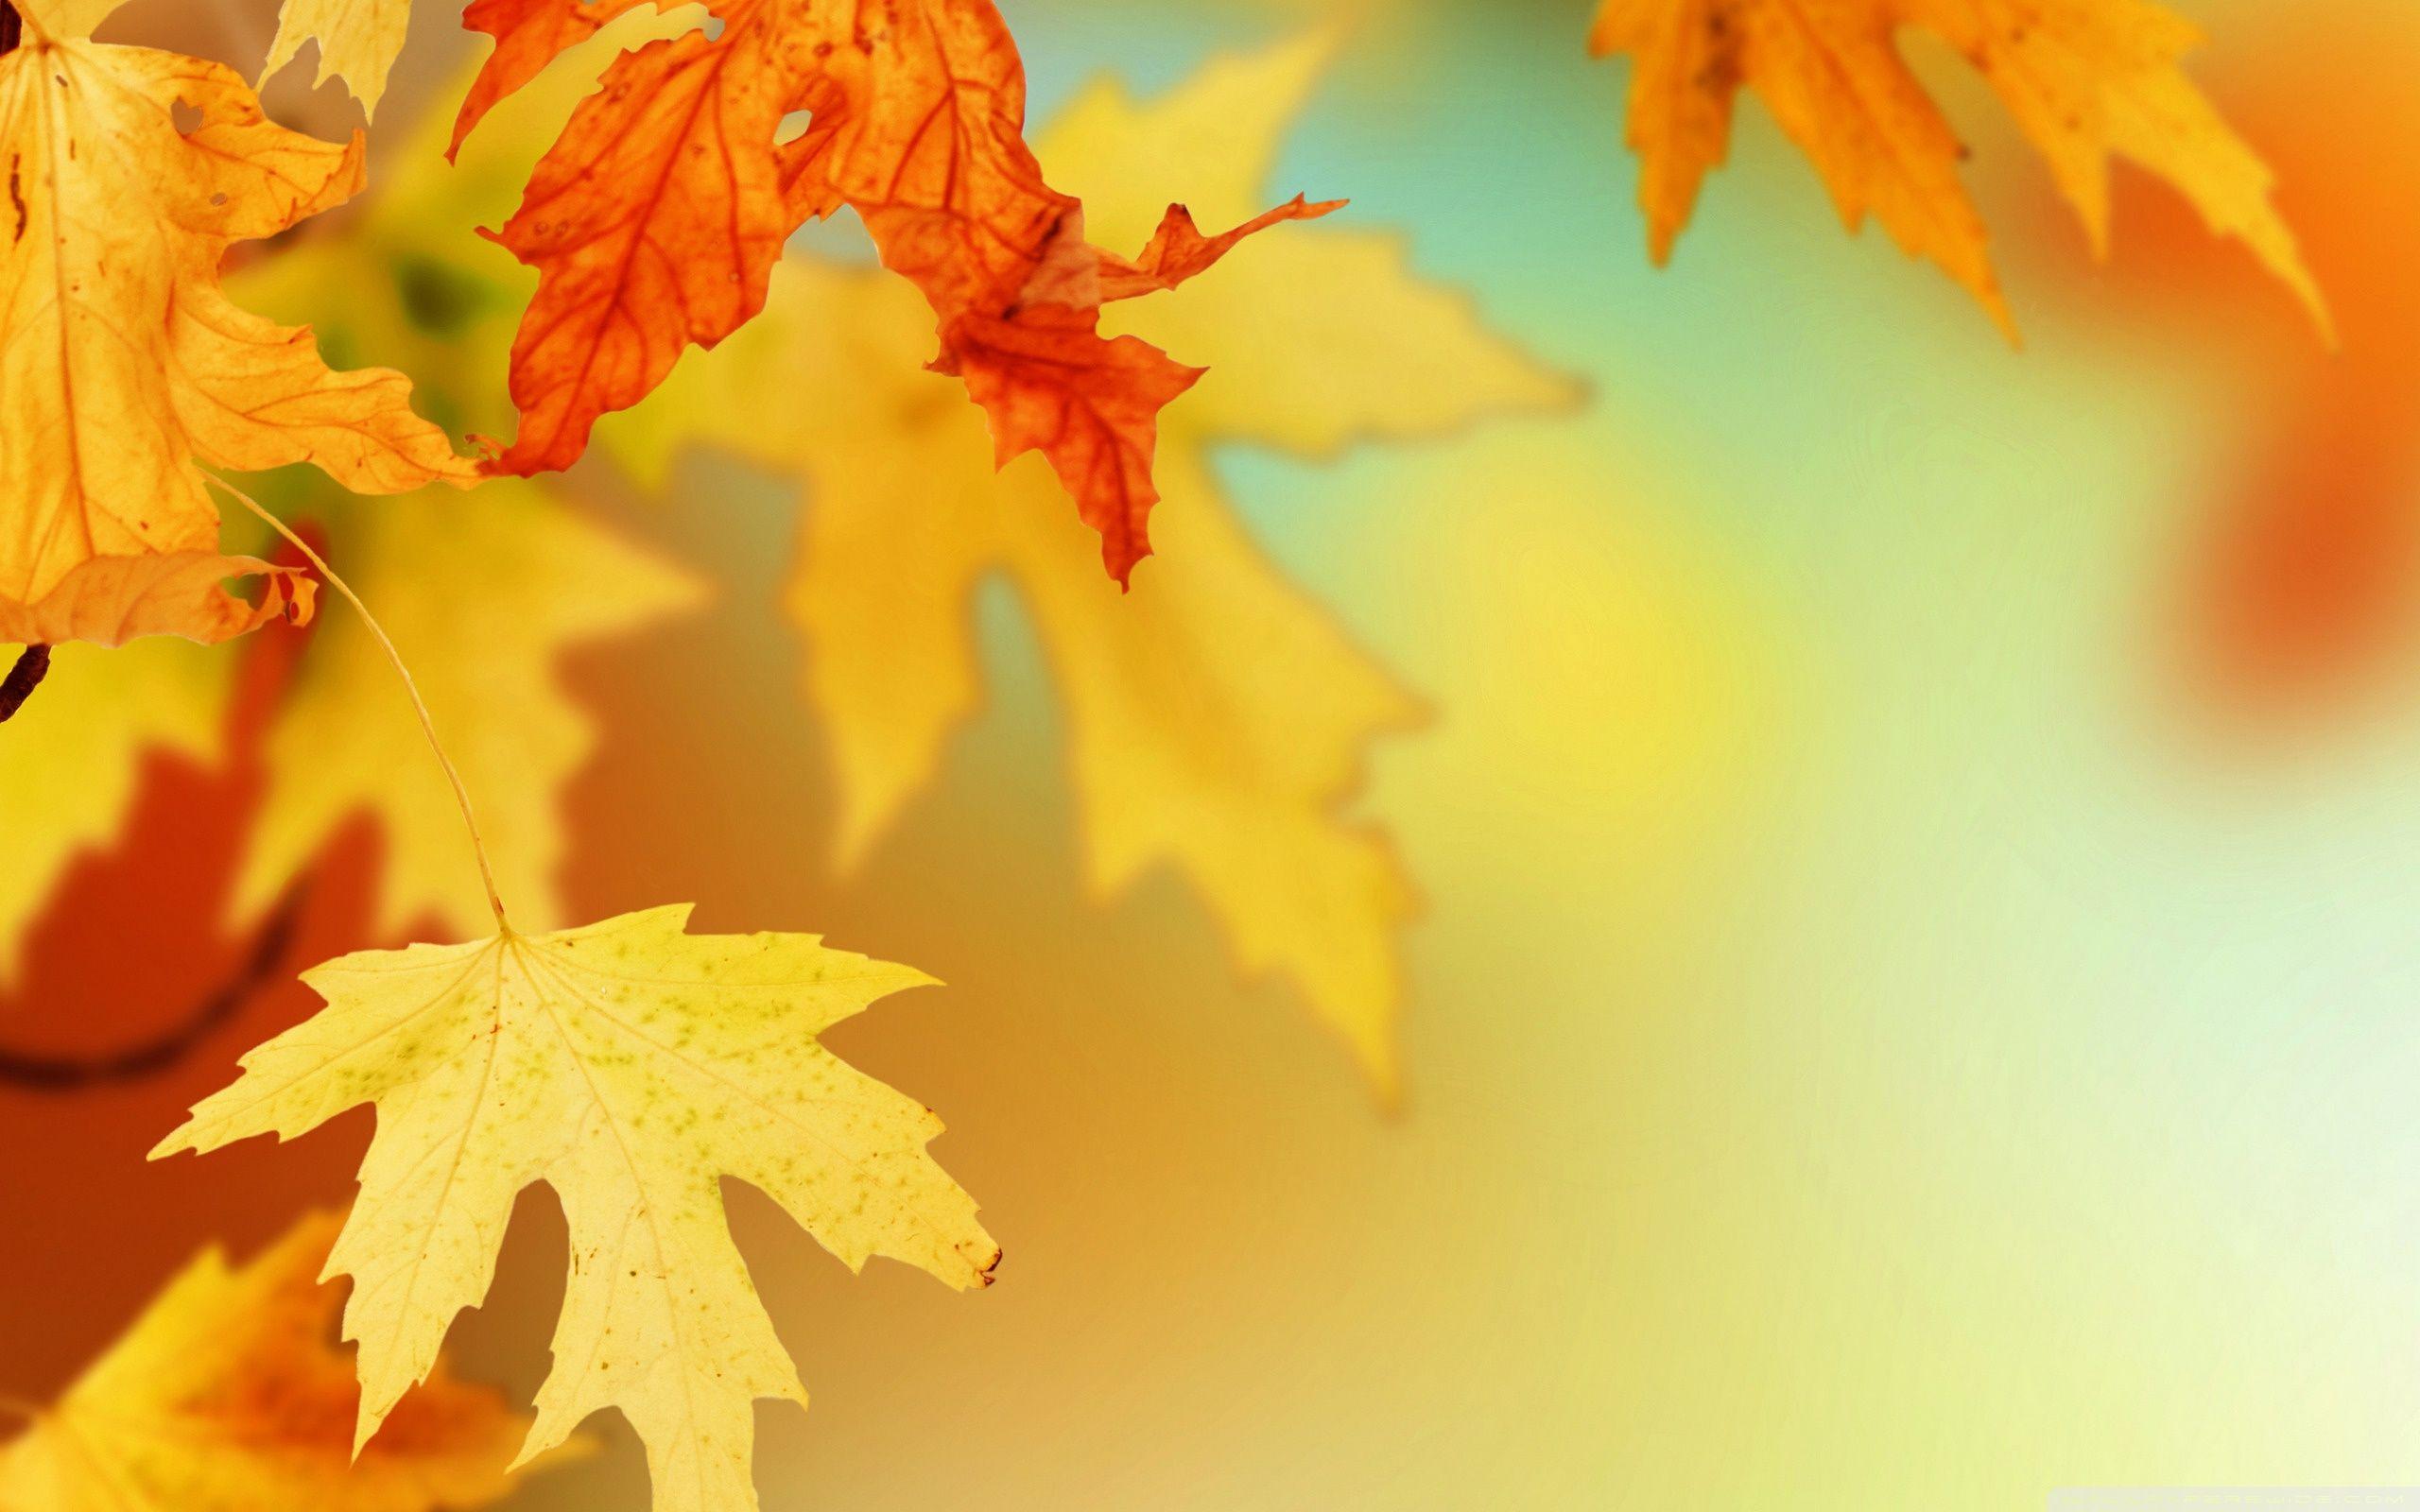 Fall Leaf Wallpapers - Top Những Hình Ảnh Đẹp